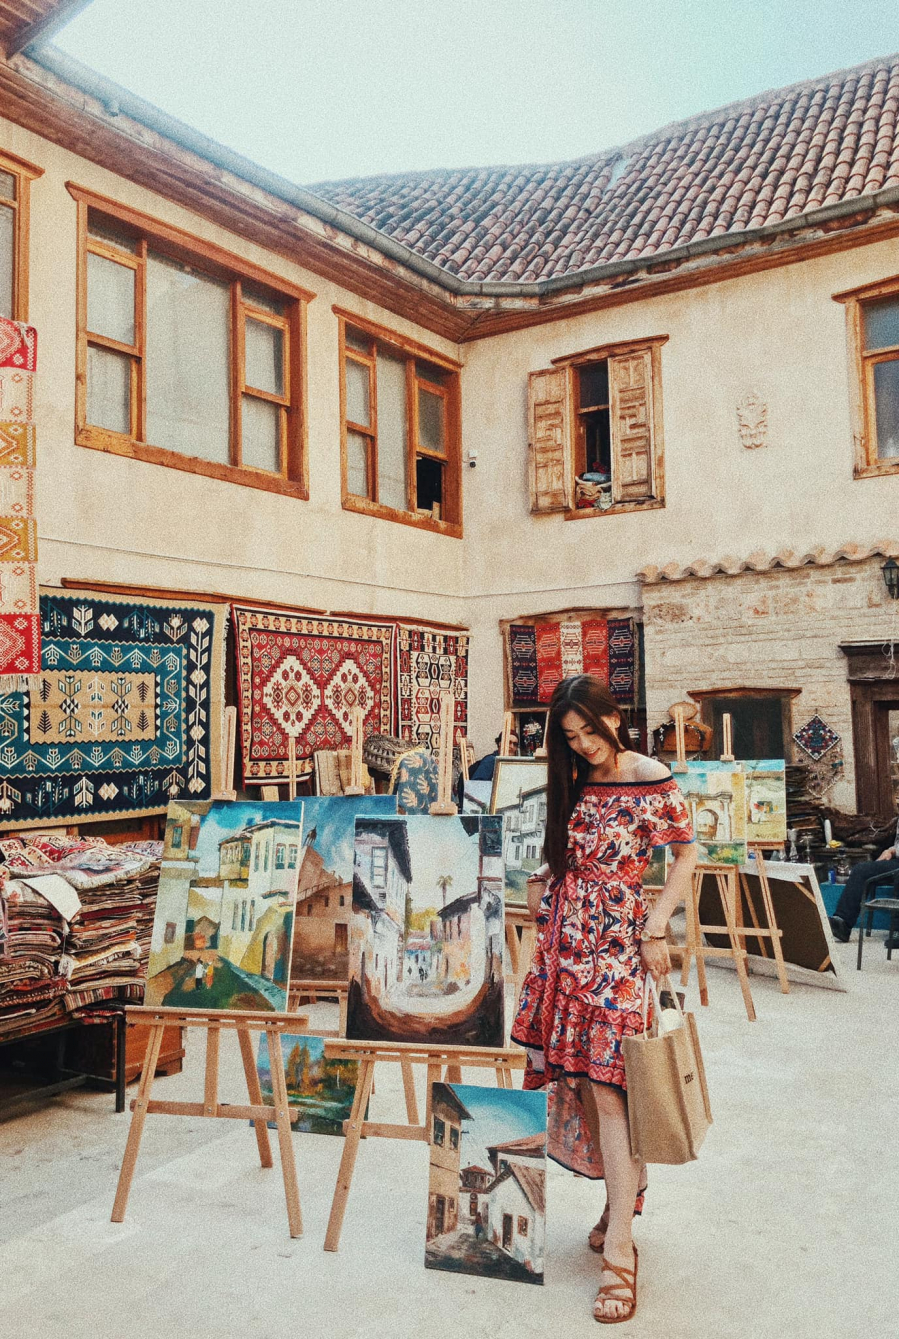 Á hậu Bùi Phương Nga check-in tại một cửa hàng thảm tuyệt đẹp trong khu phố cổ